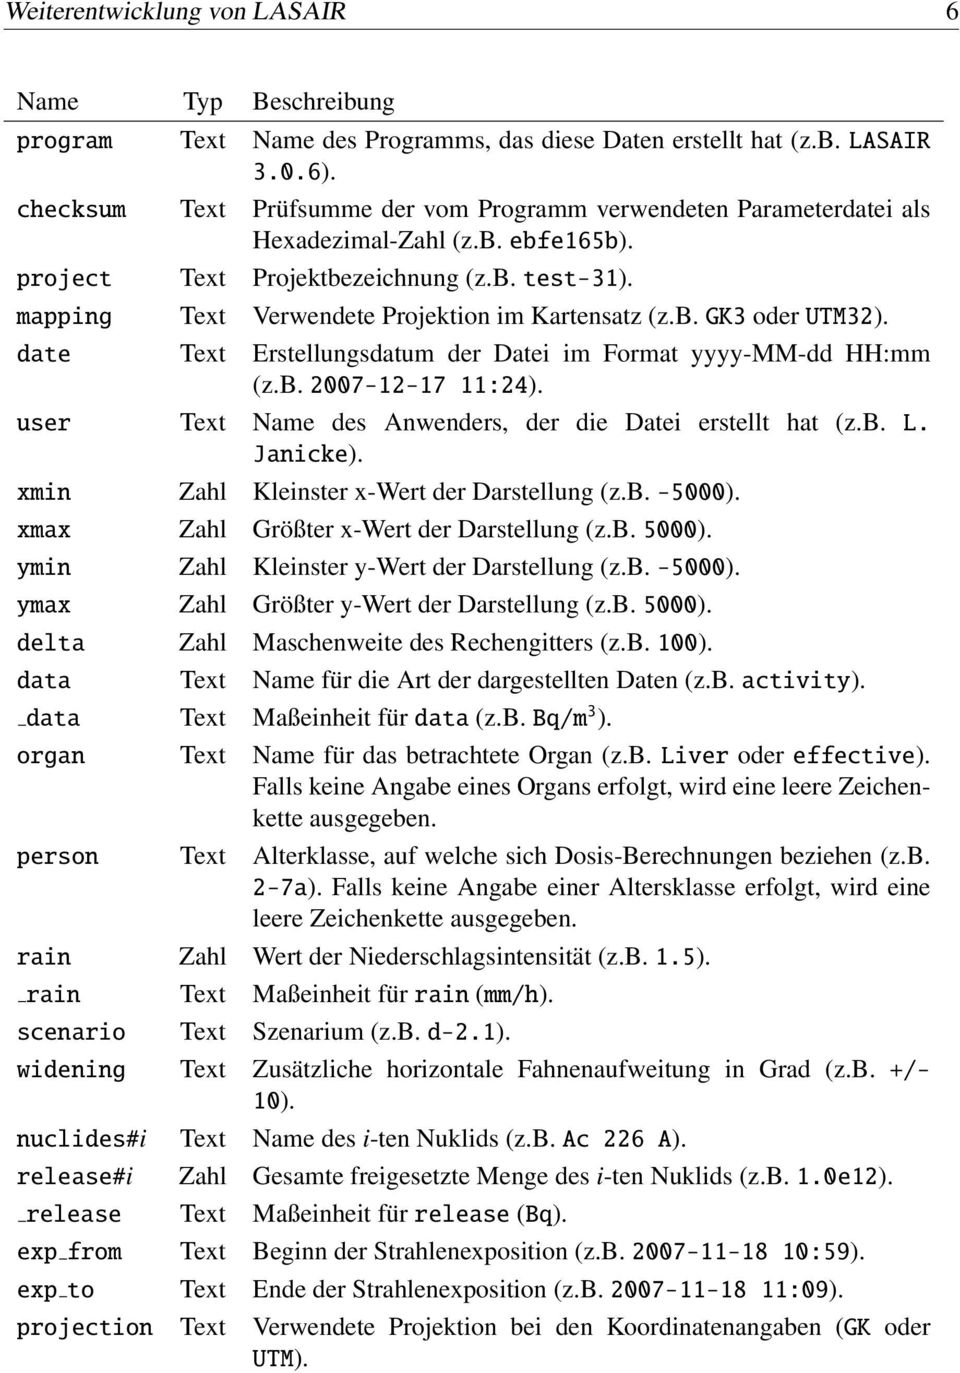 mapping Text Verwendete Projektion im Kartensatz (z.b. GK3 oder UTM32). date Text Erstellungsdatum der Datei im Format yyyy-mm-dd HH:mm (z.b. 2007-12-17 11:24).